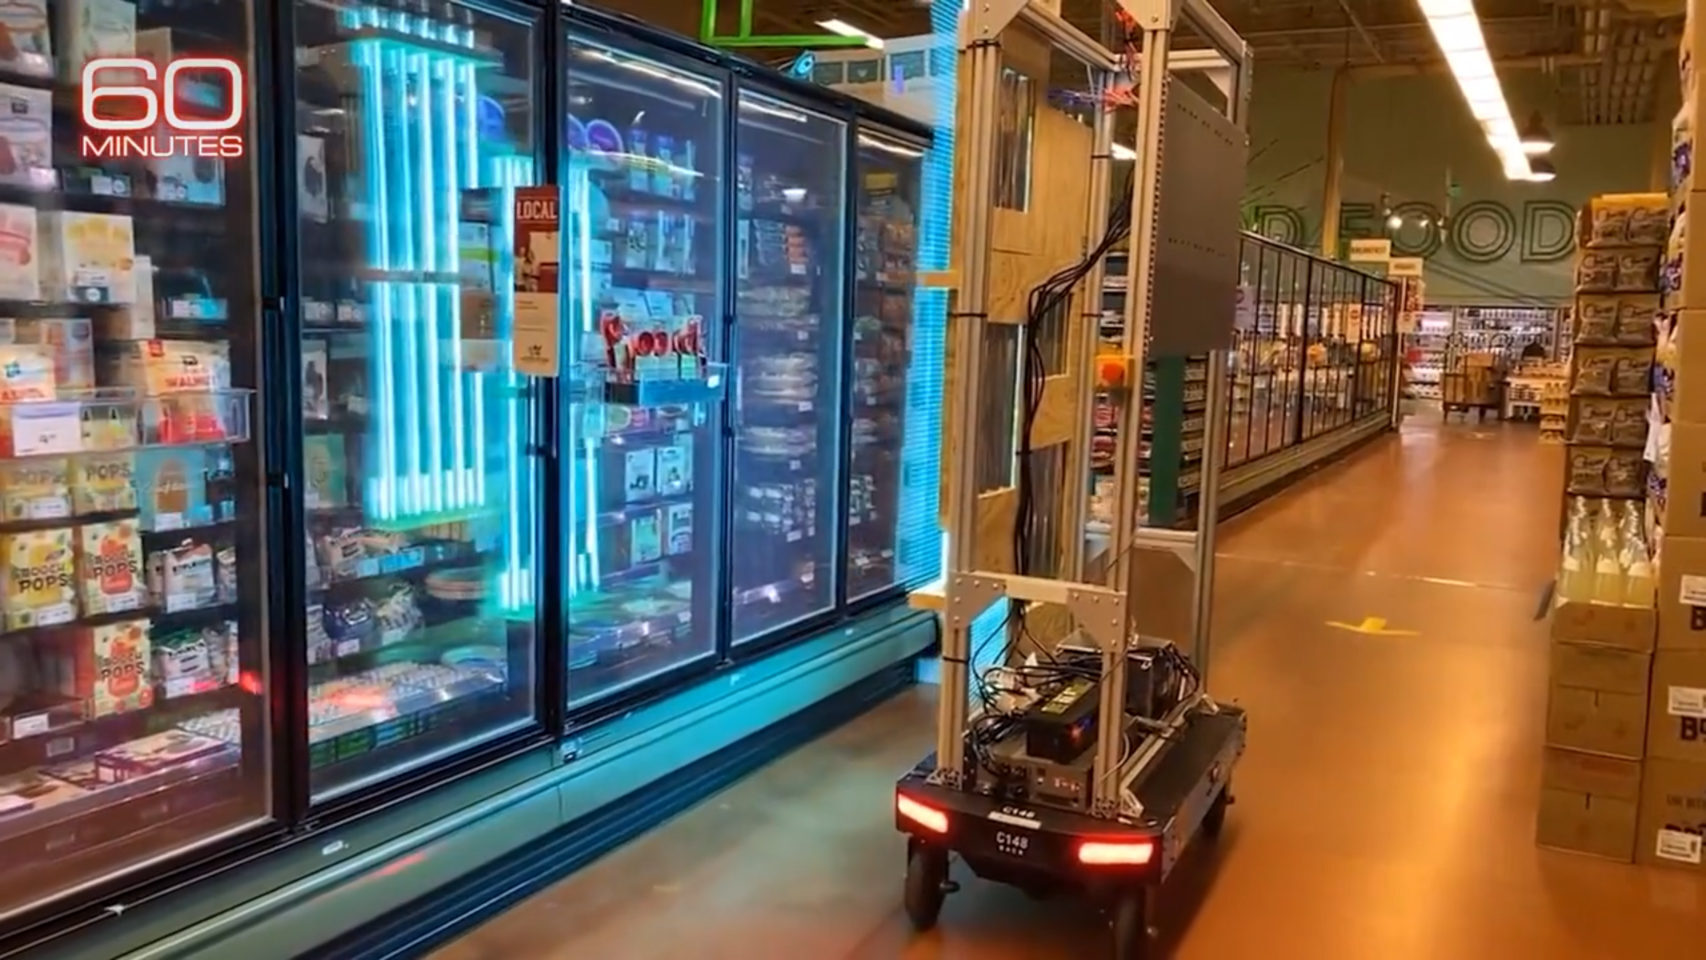 El robot desarrollado por Amazon para eliminar el coronavirus de sus almacenes